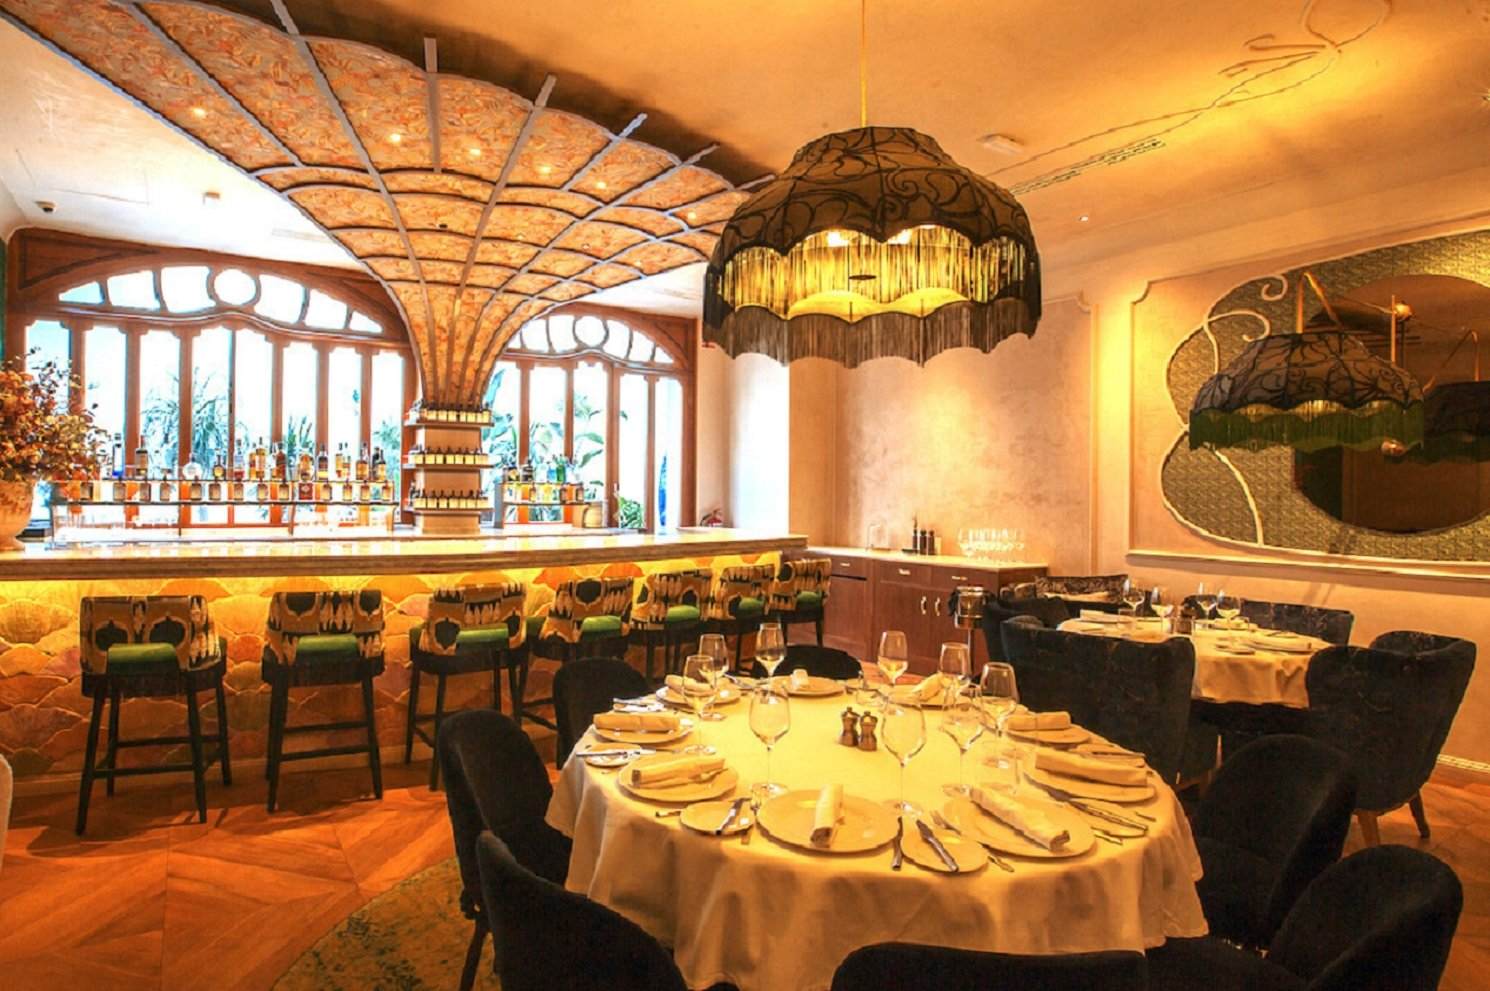 El nou restaurant de luxe del carrer d'Enric Granados que ha seduït Barcelona